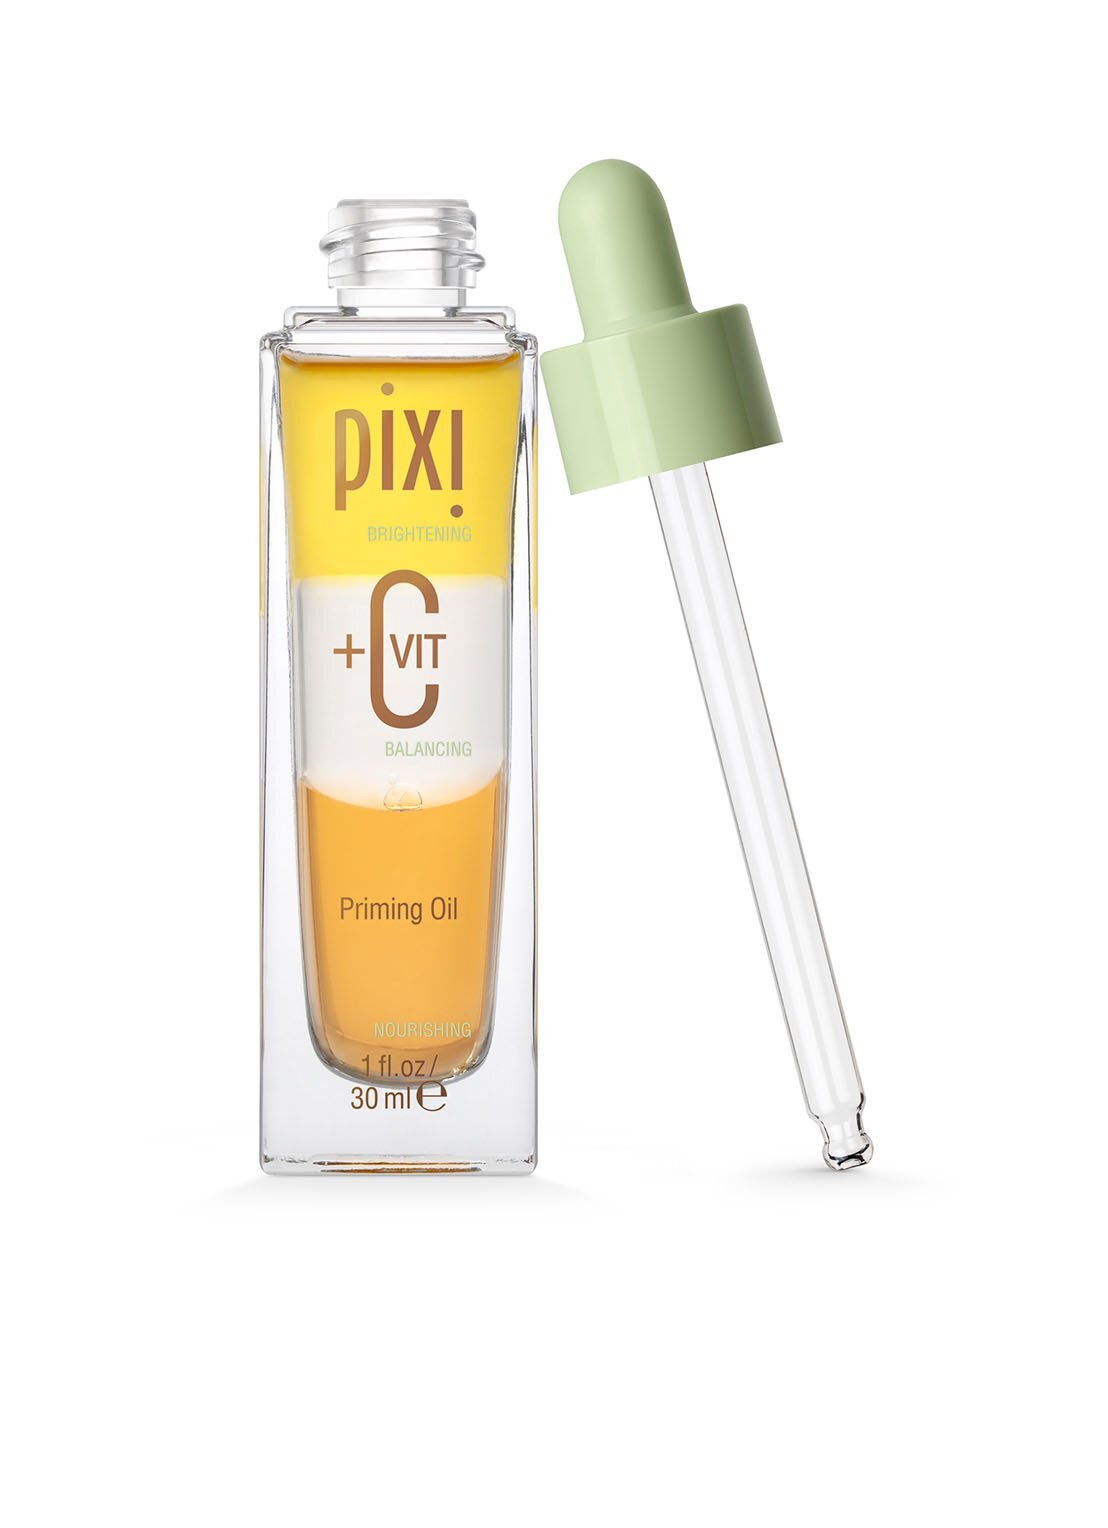 Pixi +C Vit Priming Oil - primer